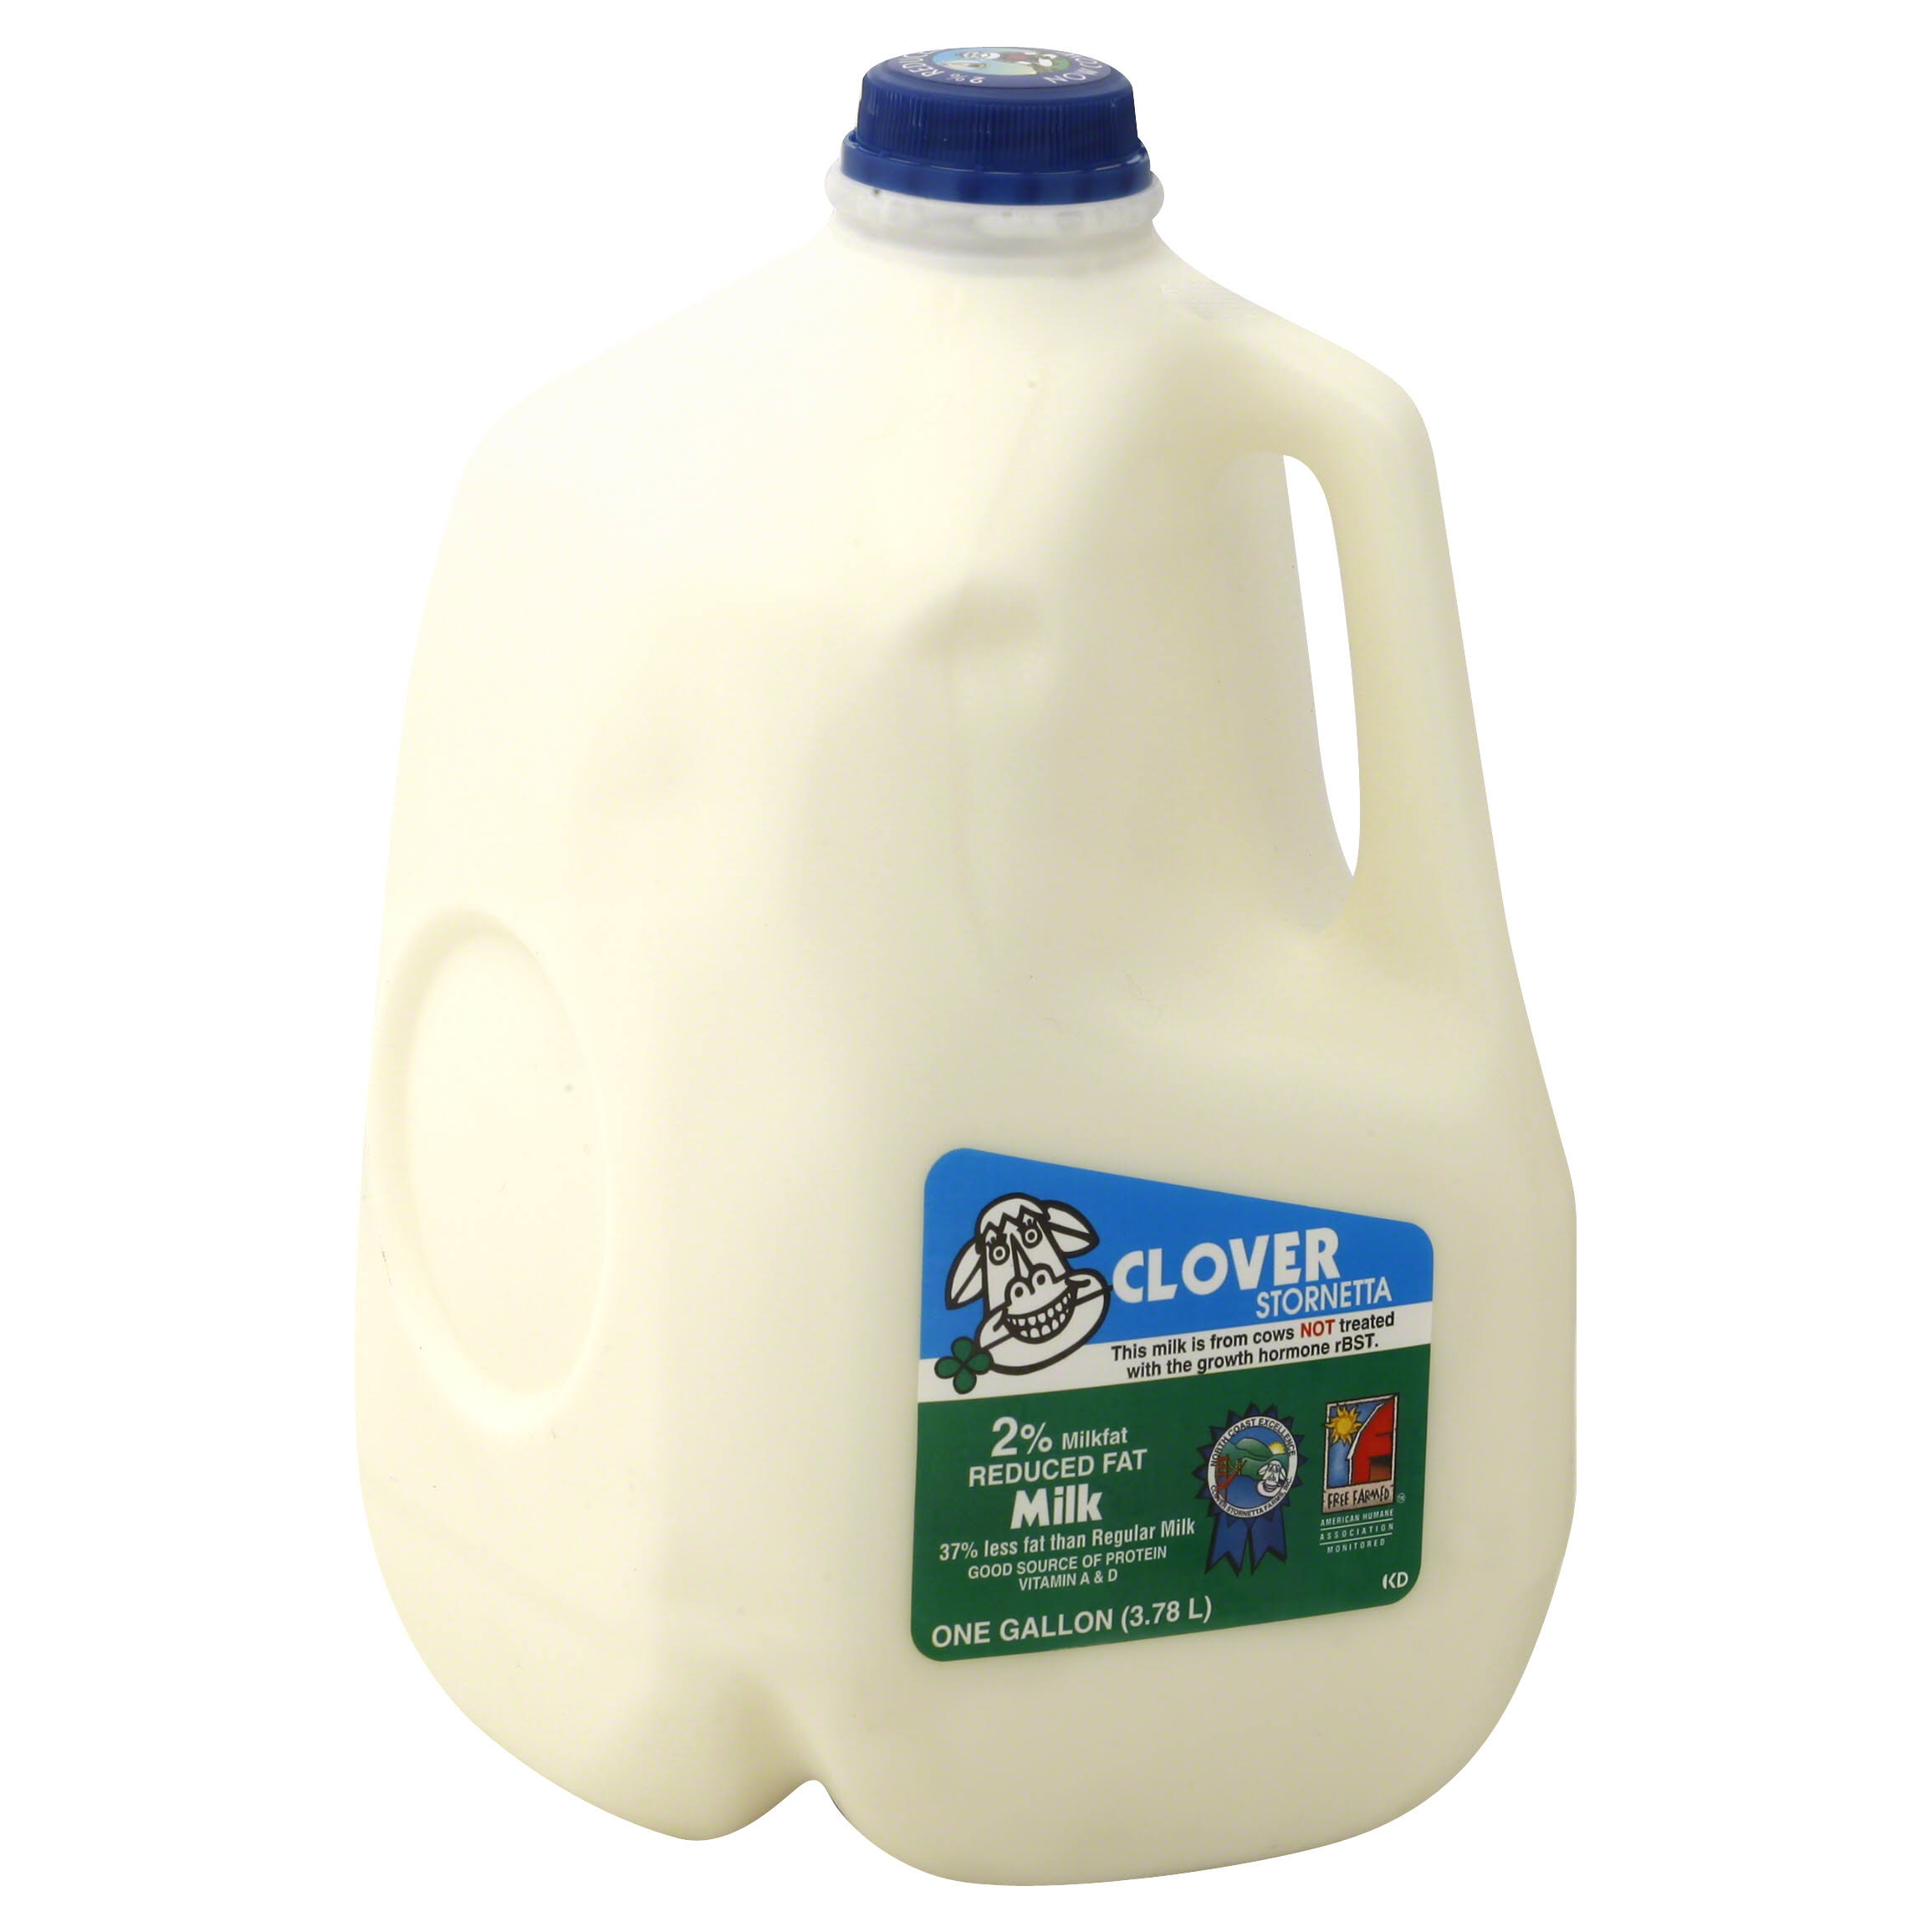 Clover Milk, Reduced Fat, 2% Milkfat - 1 gl (3.78 lt)